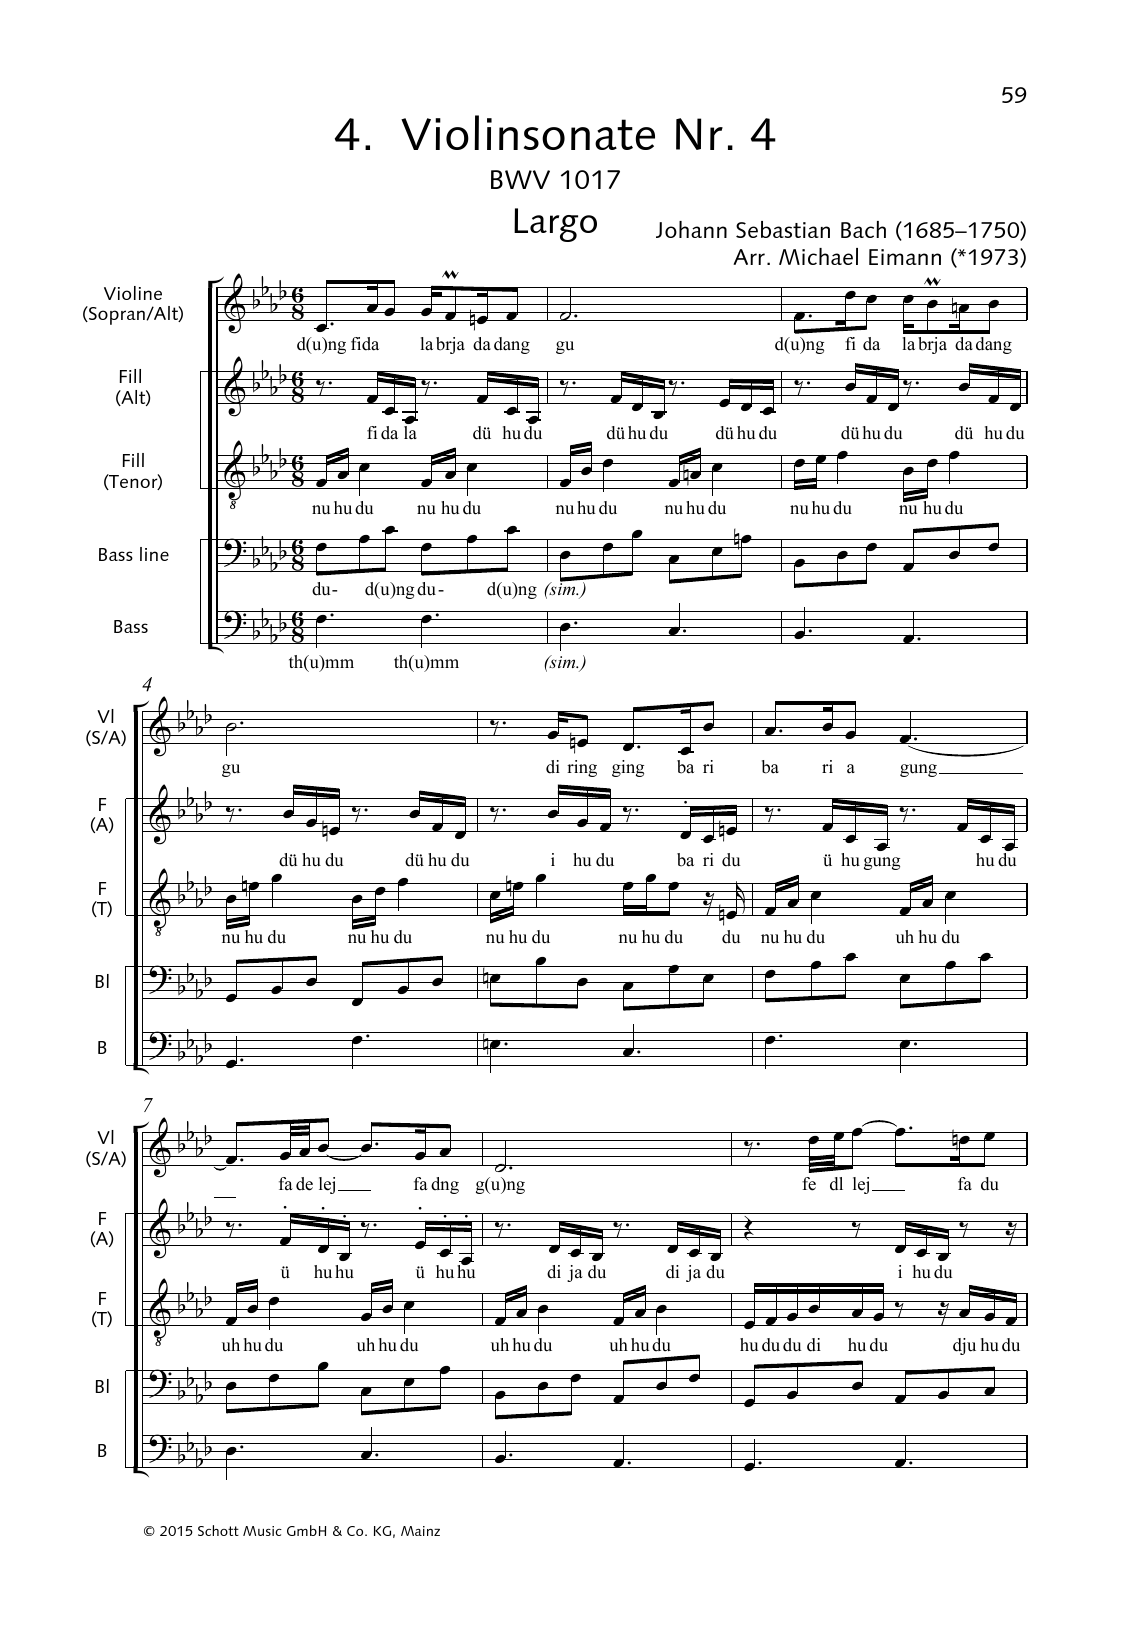 Johann Sebastian Bach Violin Sonata No. 4 (Largo) Sheet Music Notes & Chords for Choral - Download or Print PDF